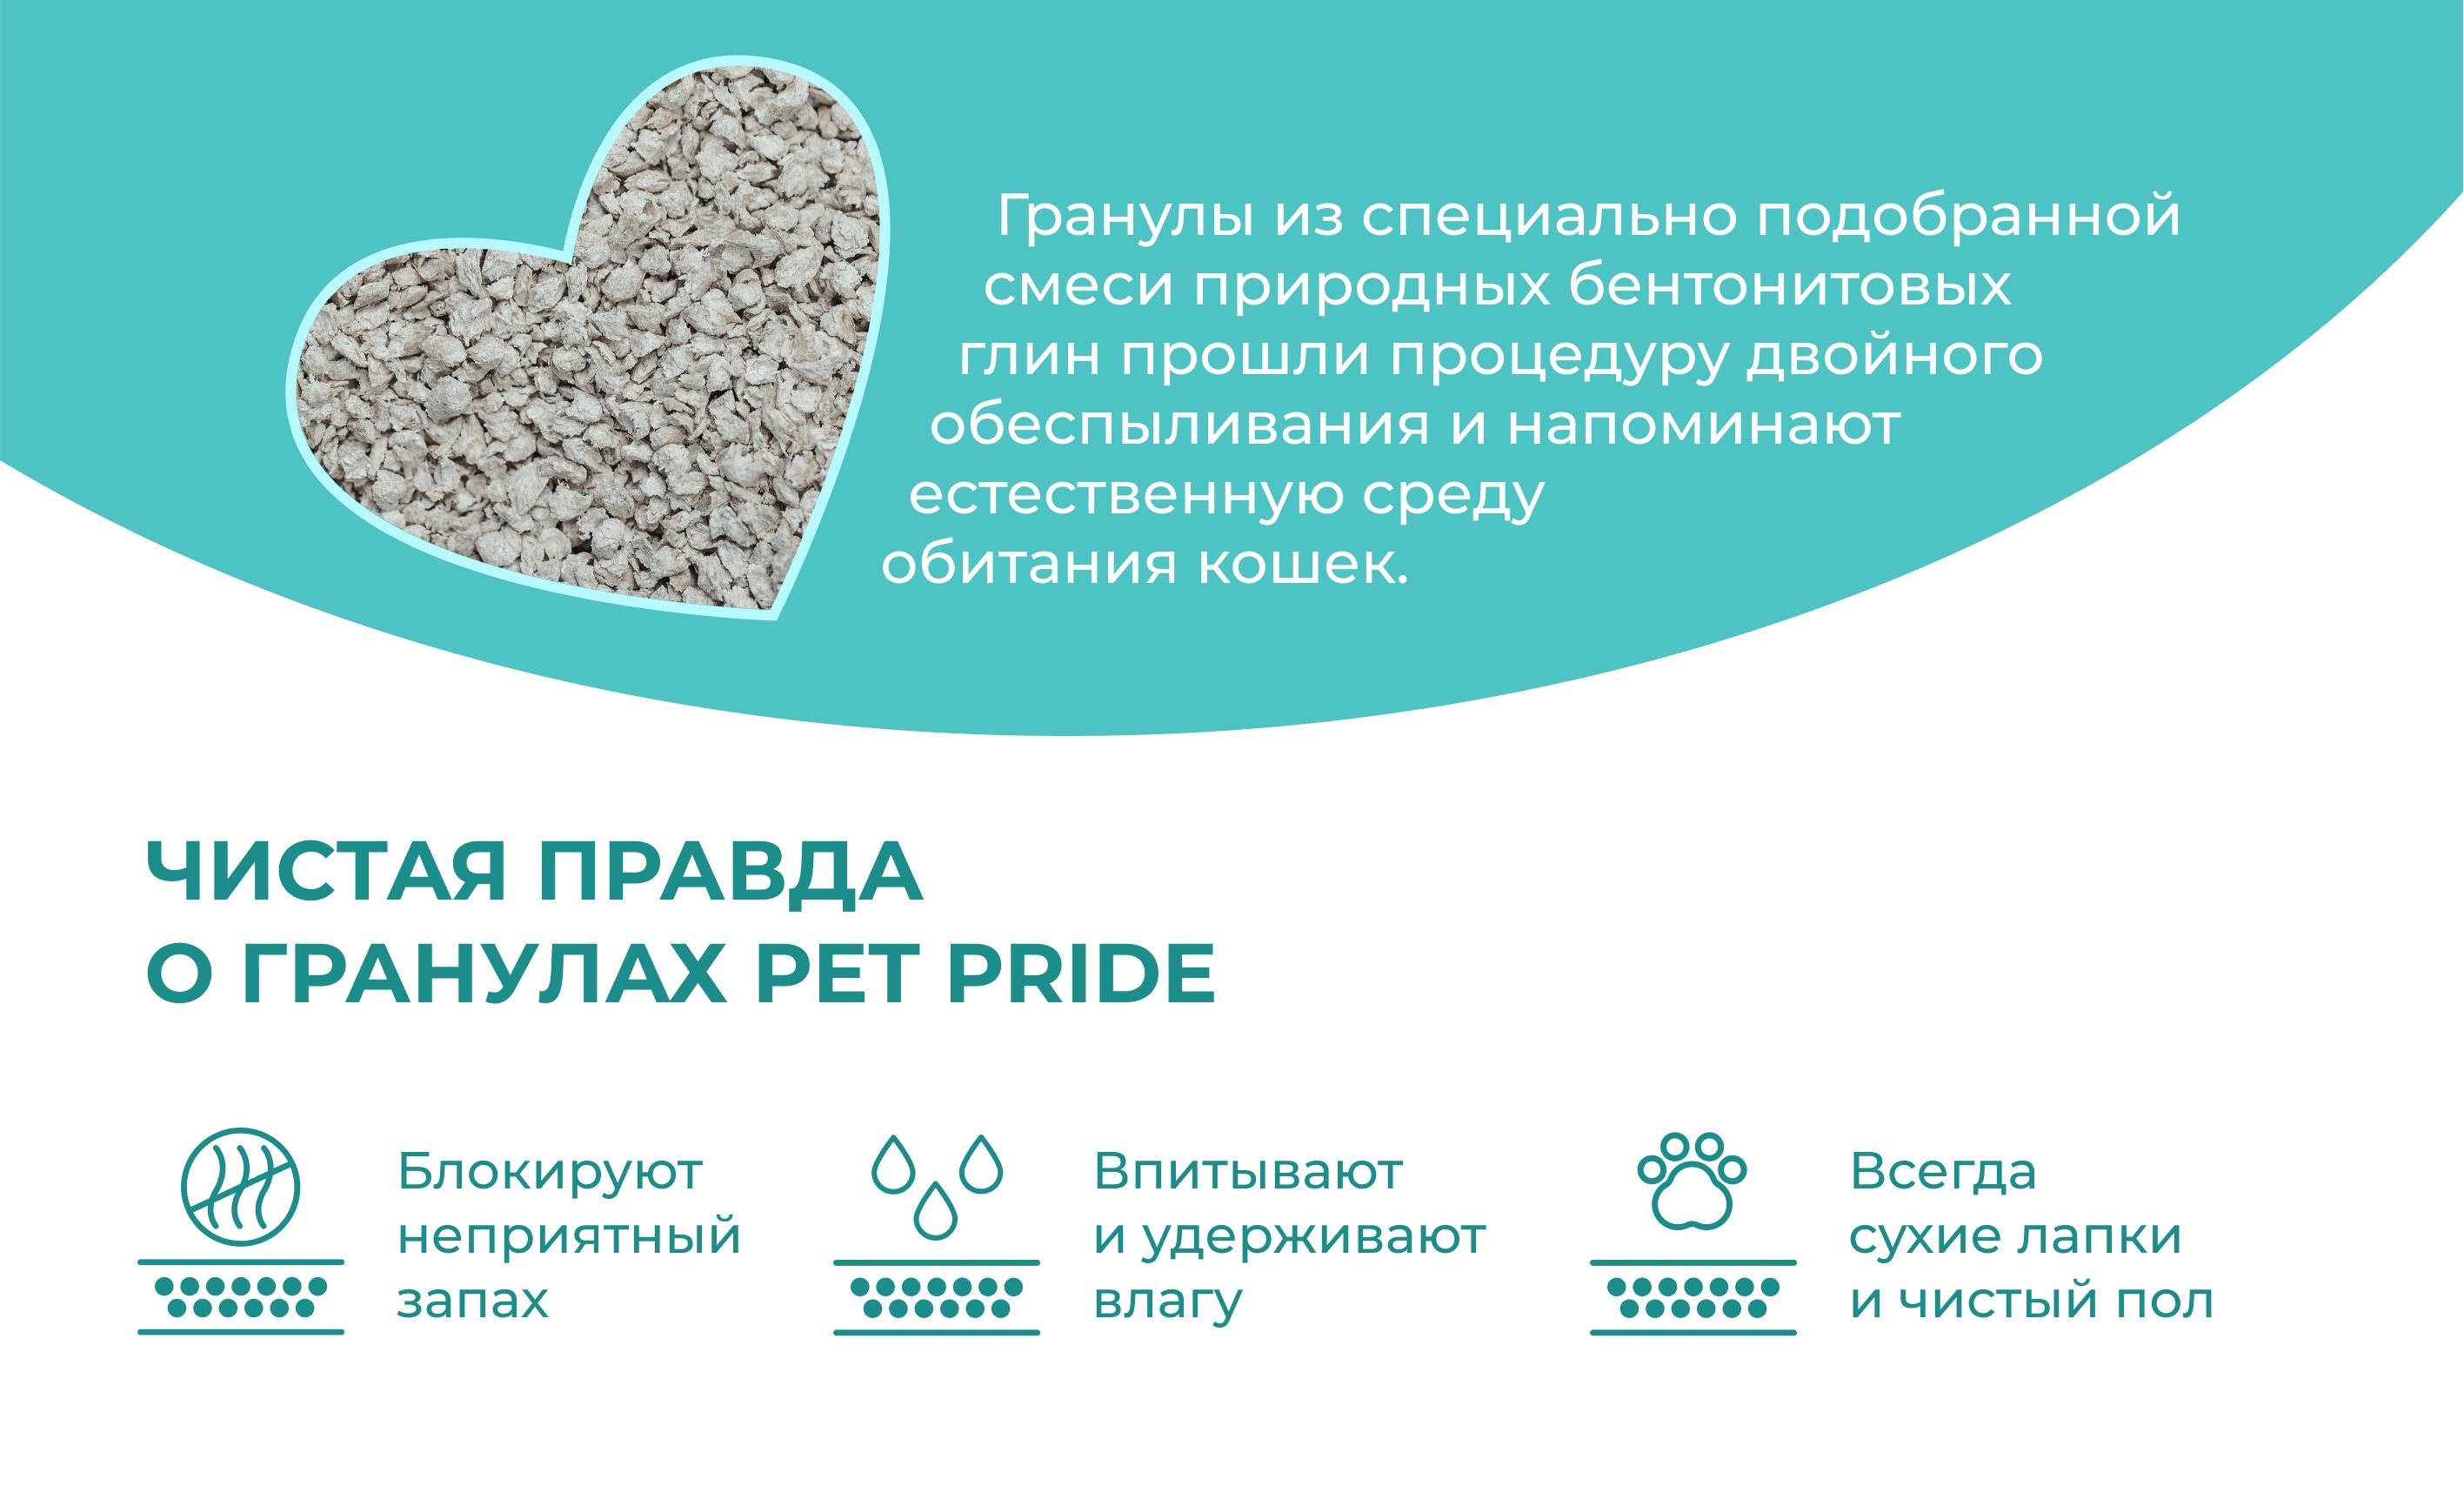 Наполнитель pet pride. Pet Pride наполнитель. Наполнитель для кошачьего туалета Pet Pride.